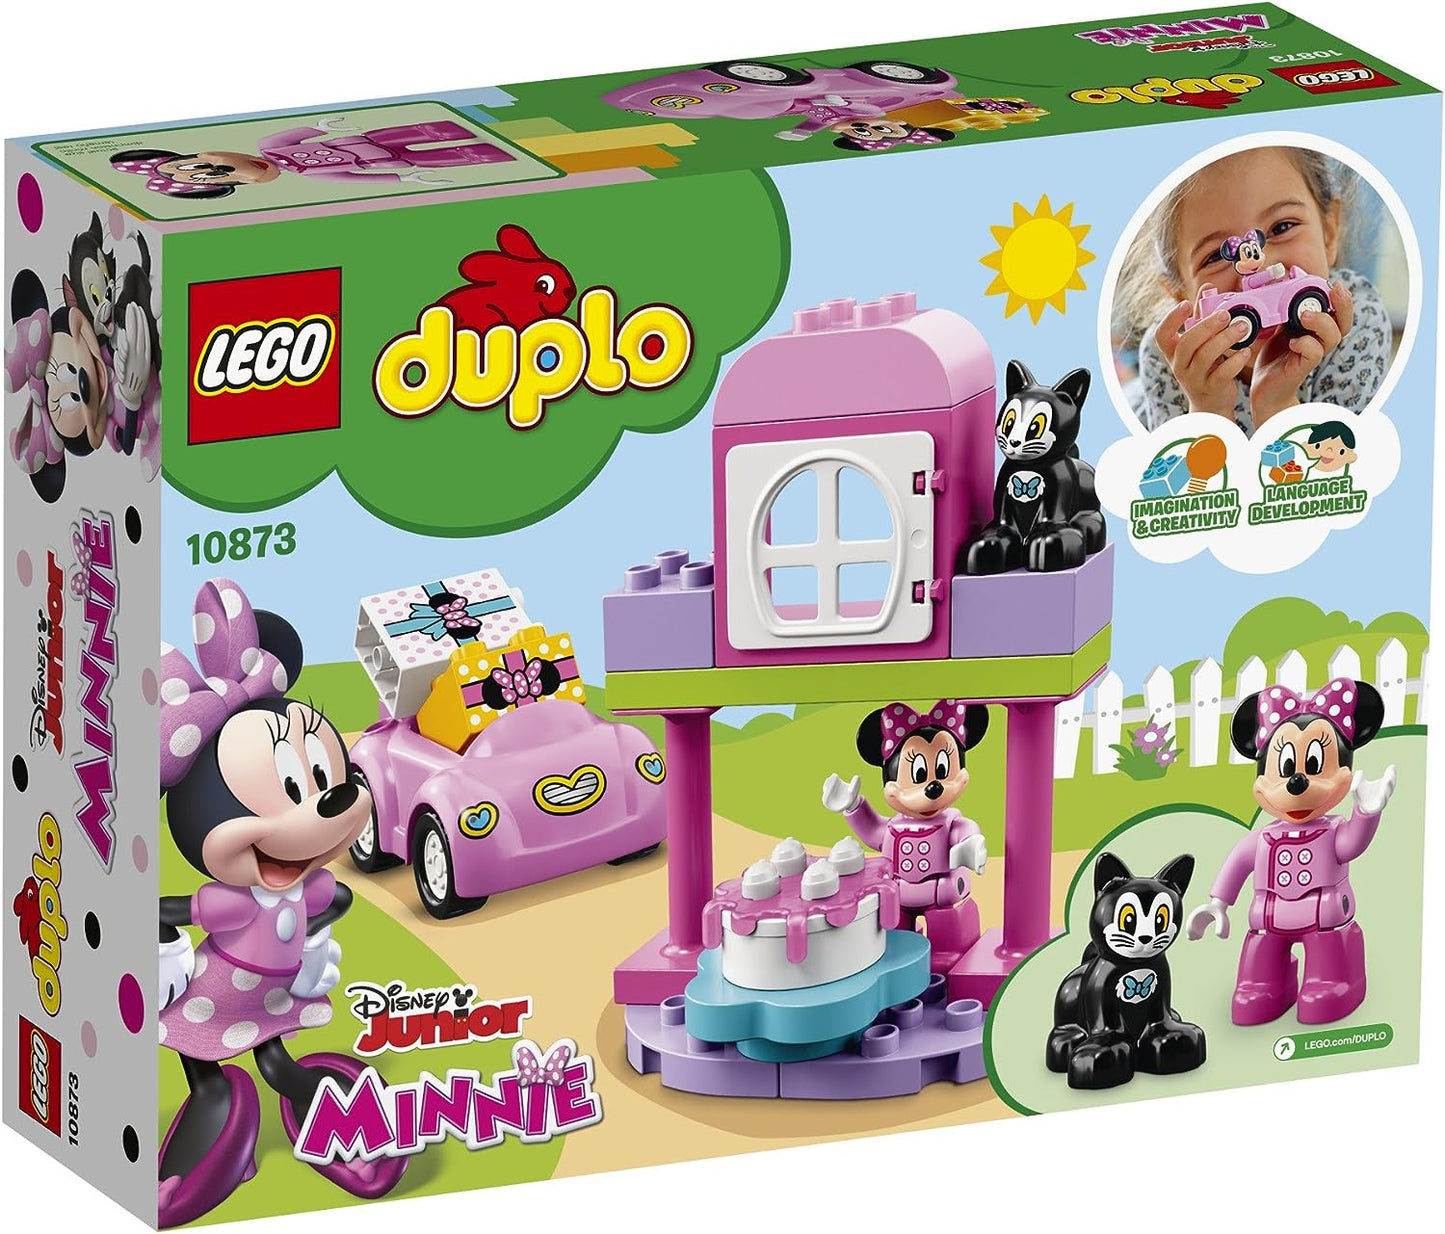 LEGO DUPLO Minnie's Birthday Party 10873 (21 Pieces)